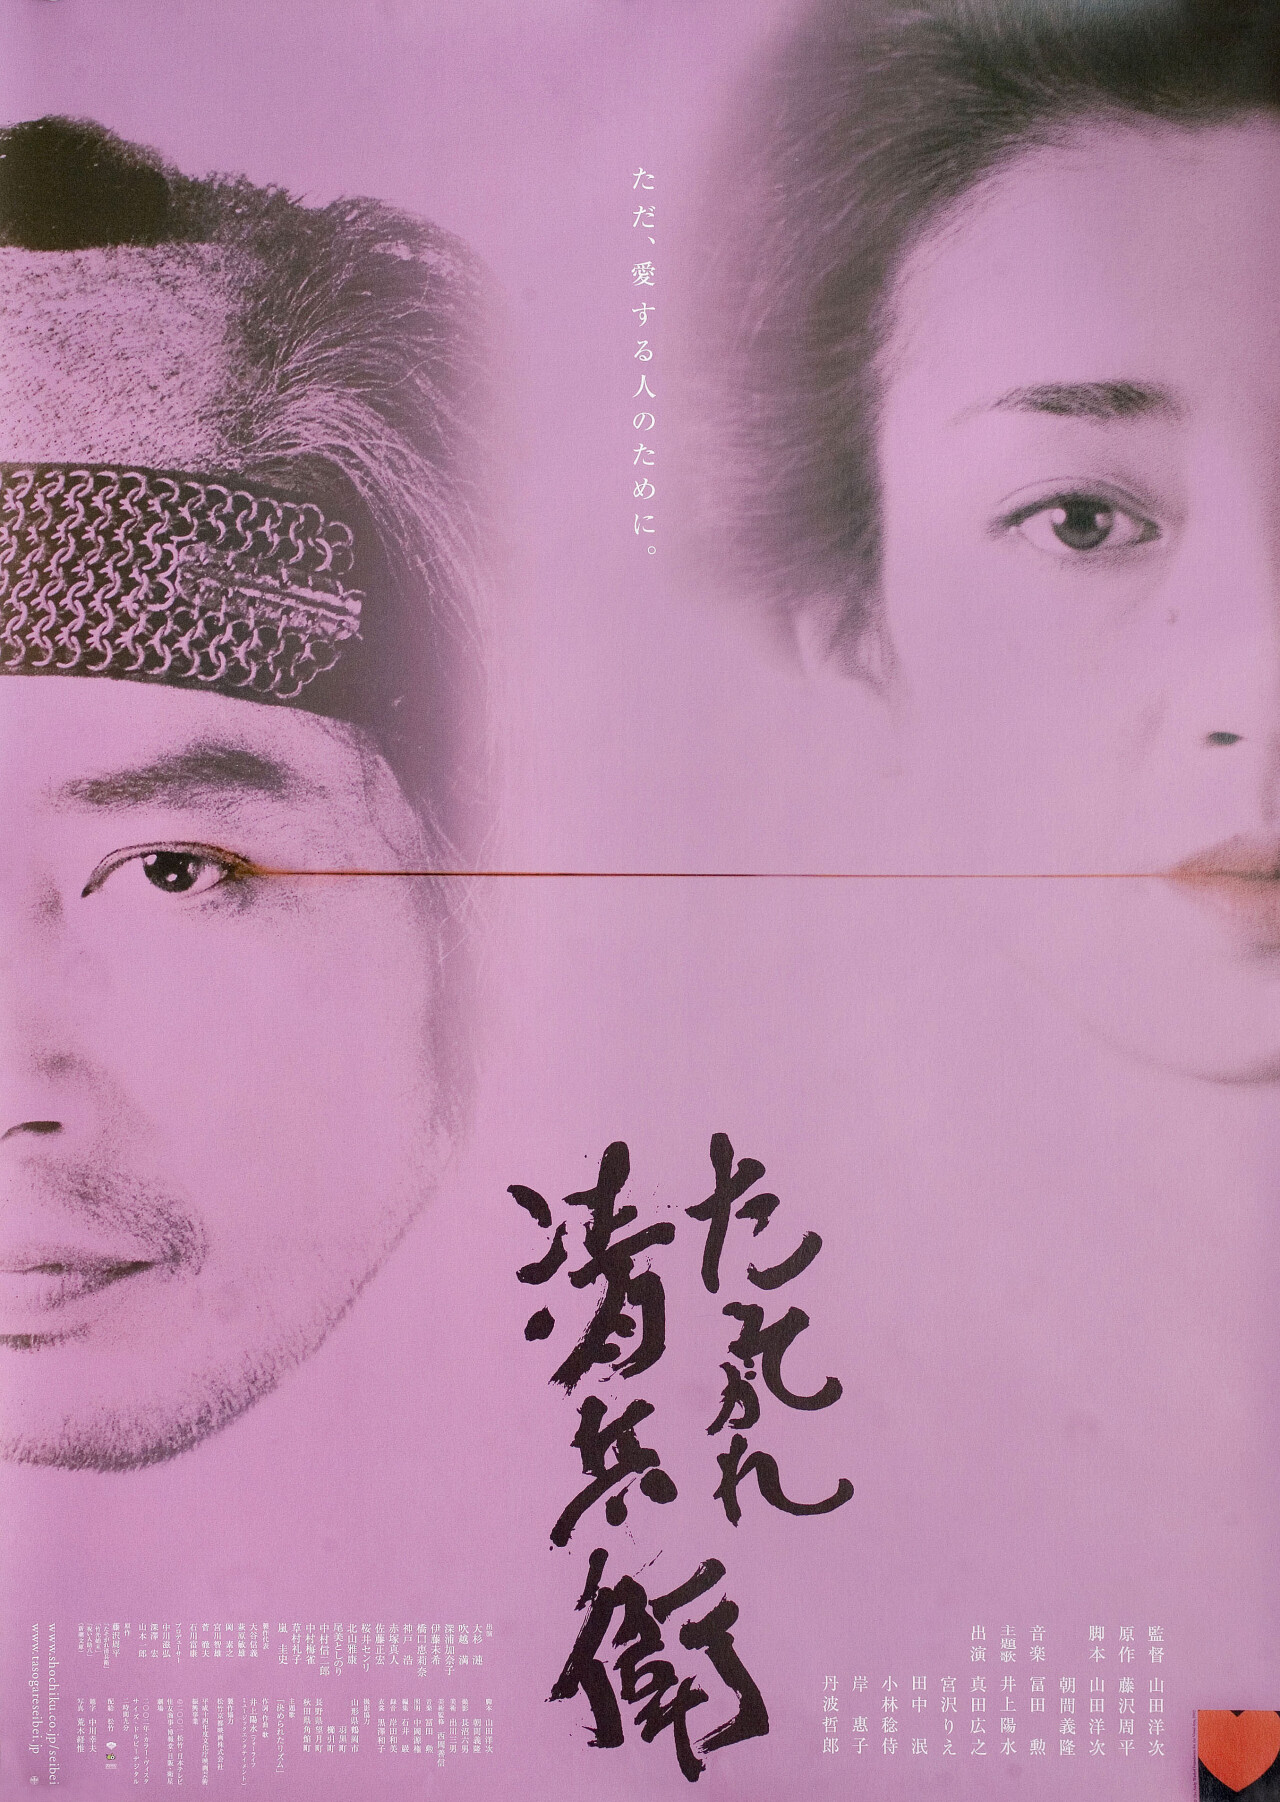 Сумрачный самурай (The Twilight Samurai, 2002), режиссёр Ёдзи Ямада, японский постер к фильму (графический дизайн, 2002 год)